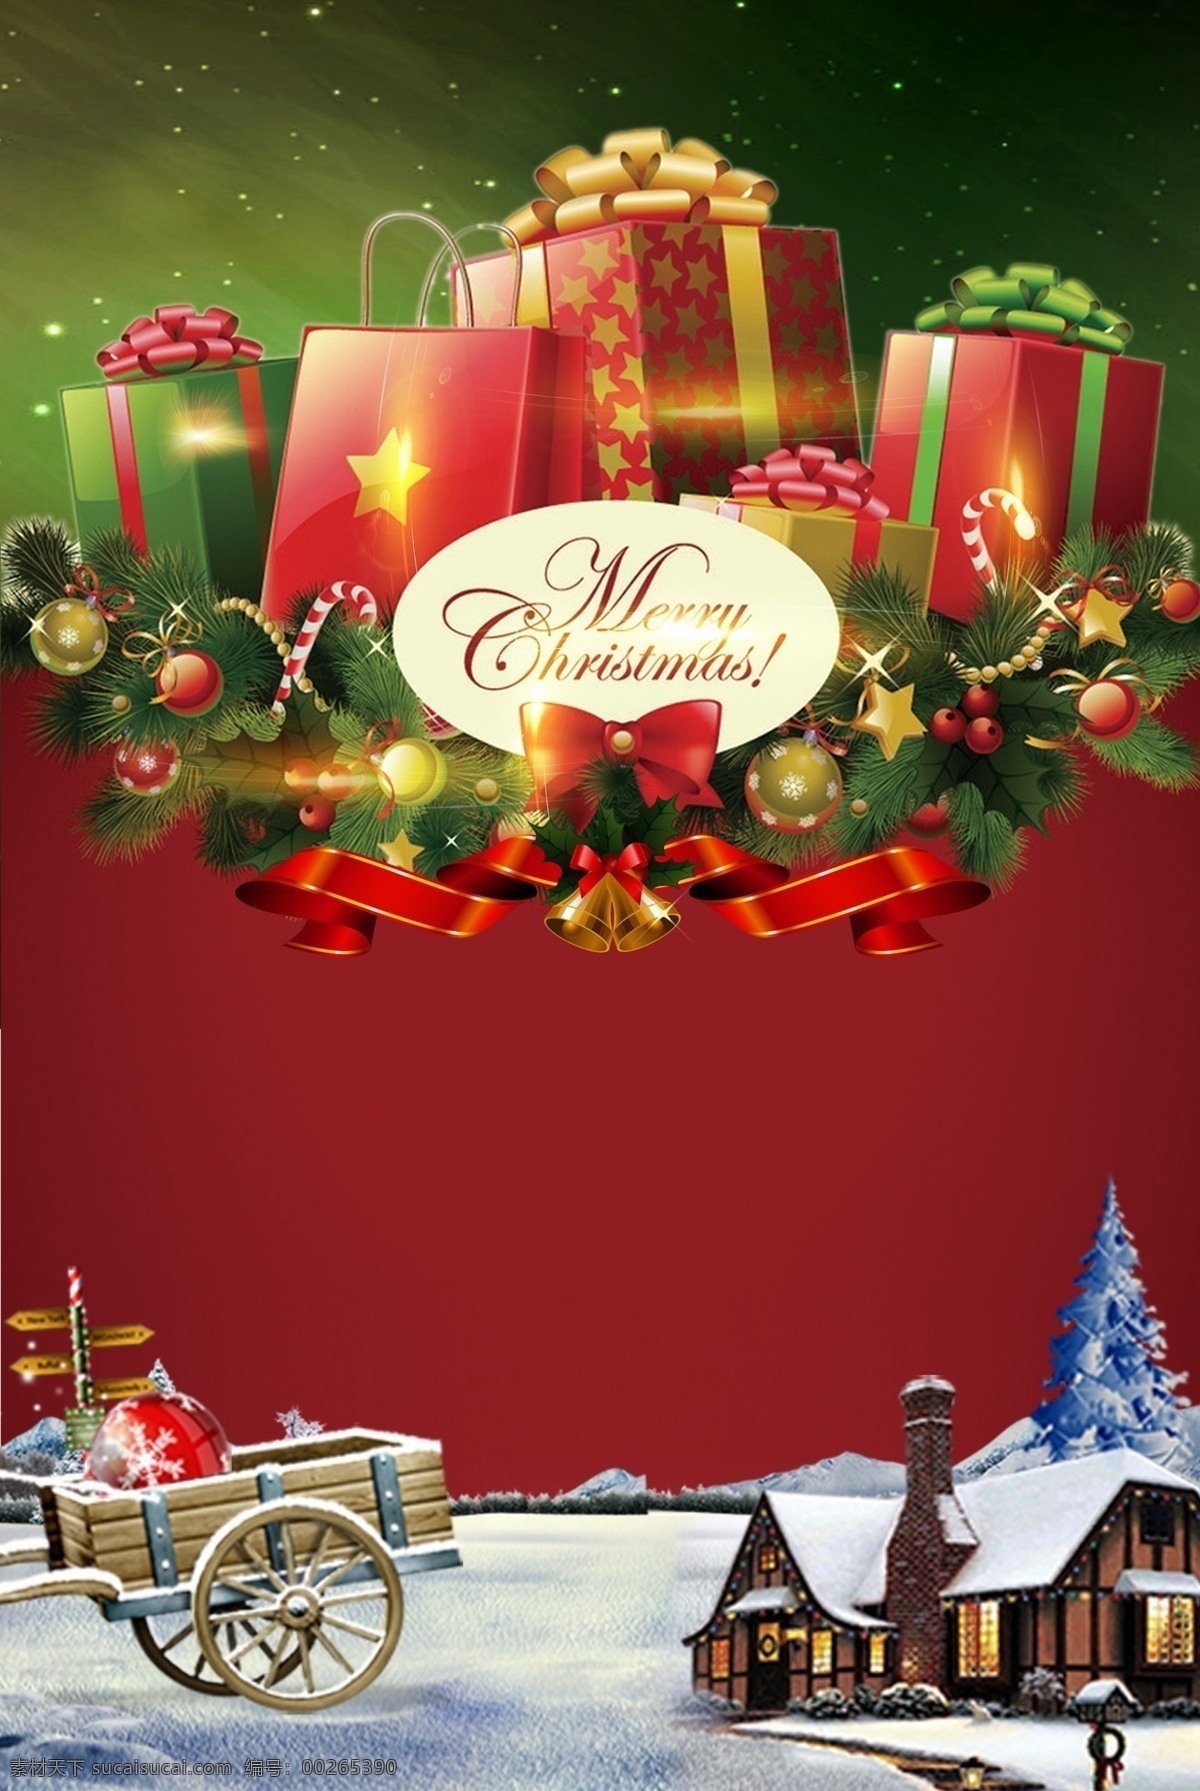 时尚 欧式 圣诞 节日 海报 背景 礼盒 鹿车 圣诞节 圣诞老人 圣诞树 星星 雪 雪花